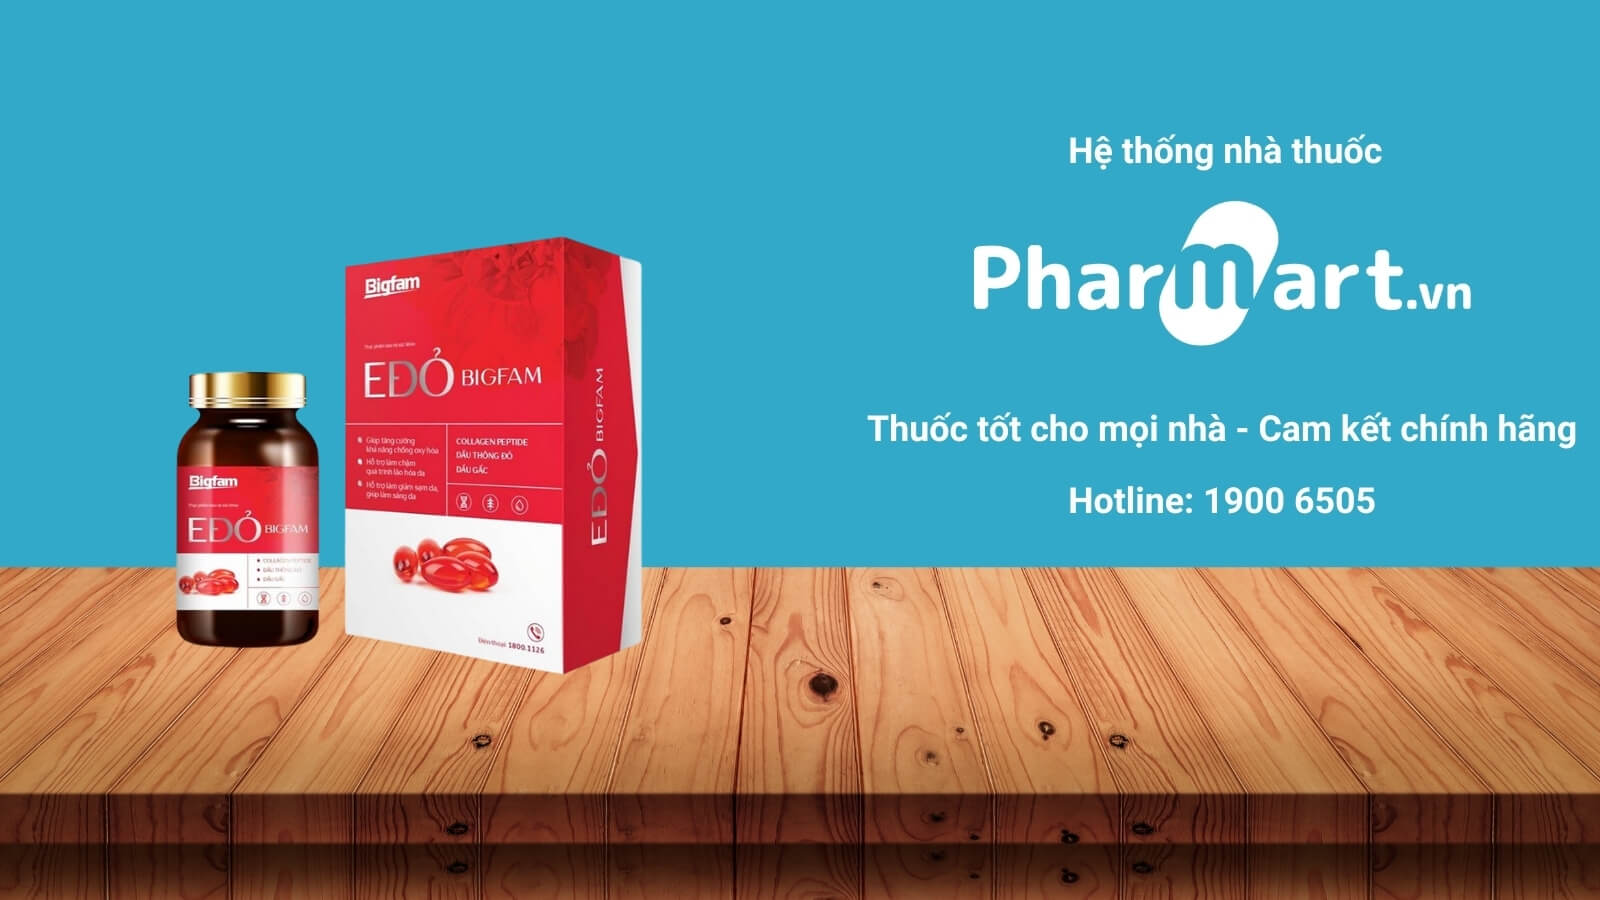 Mua Vitamin E đỏ BigFam chính hãng tại Pharmart.vn